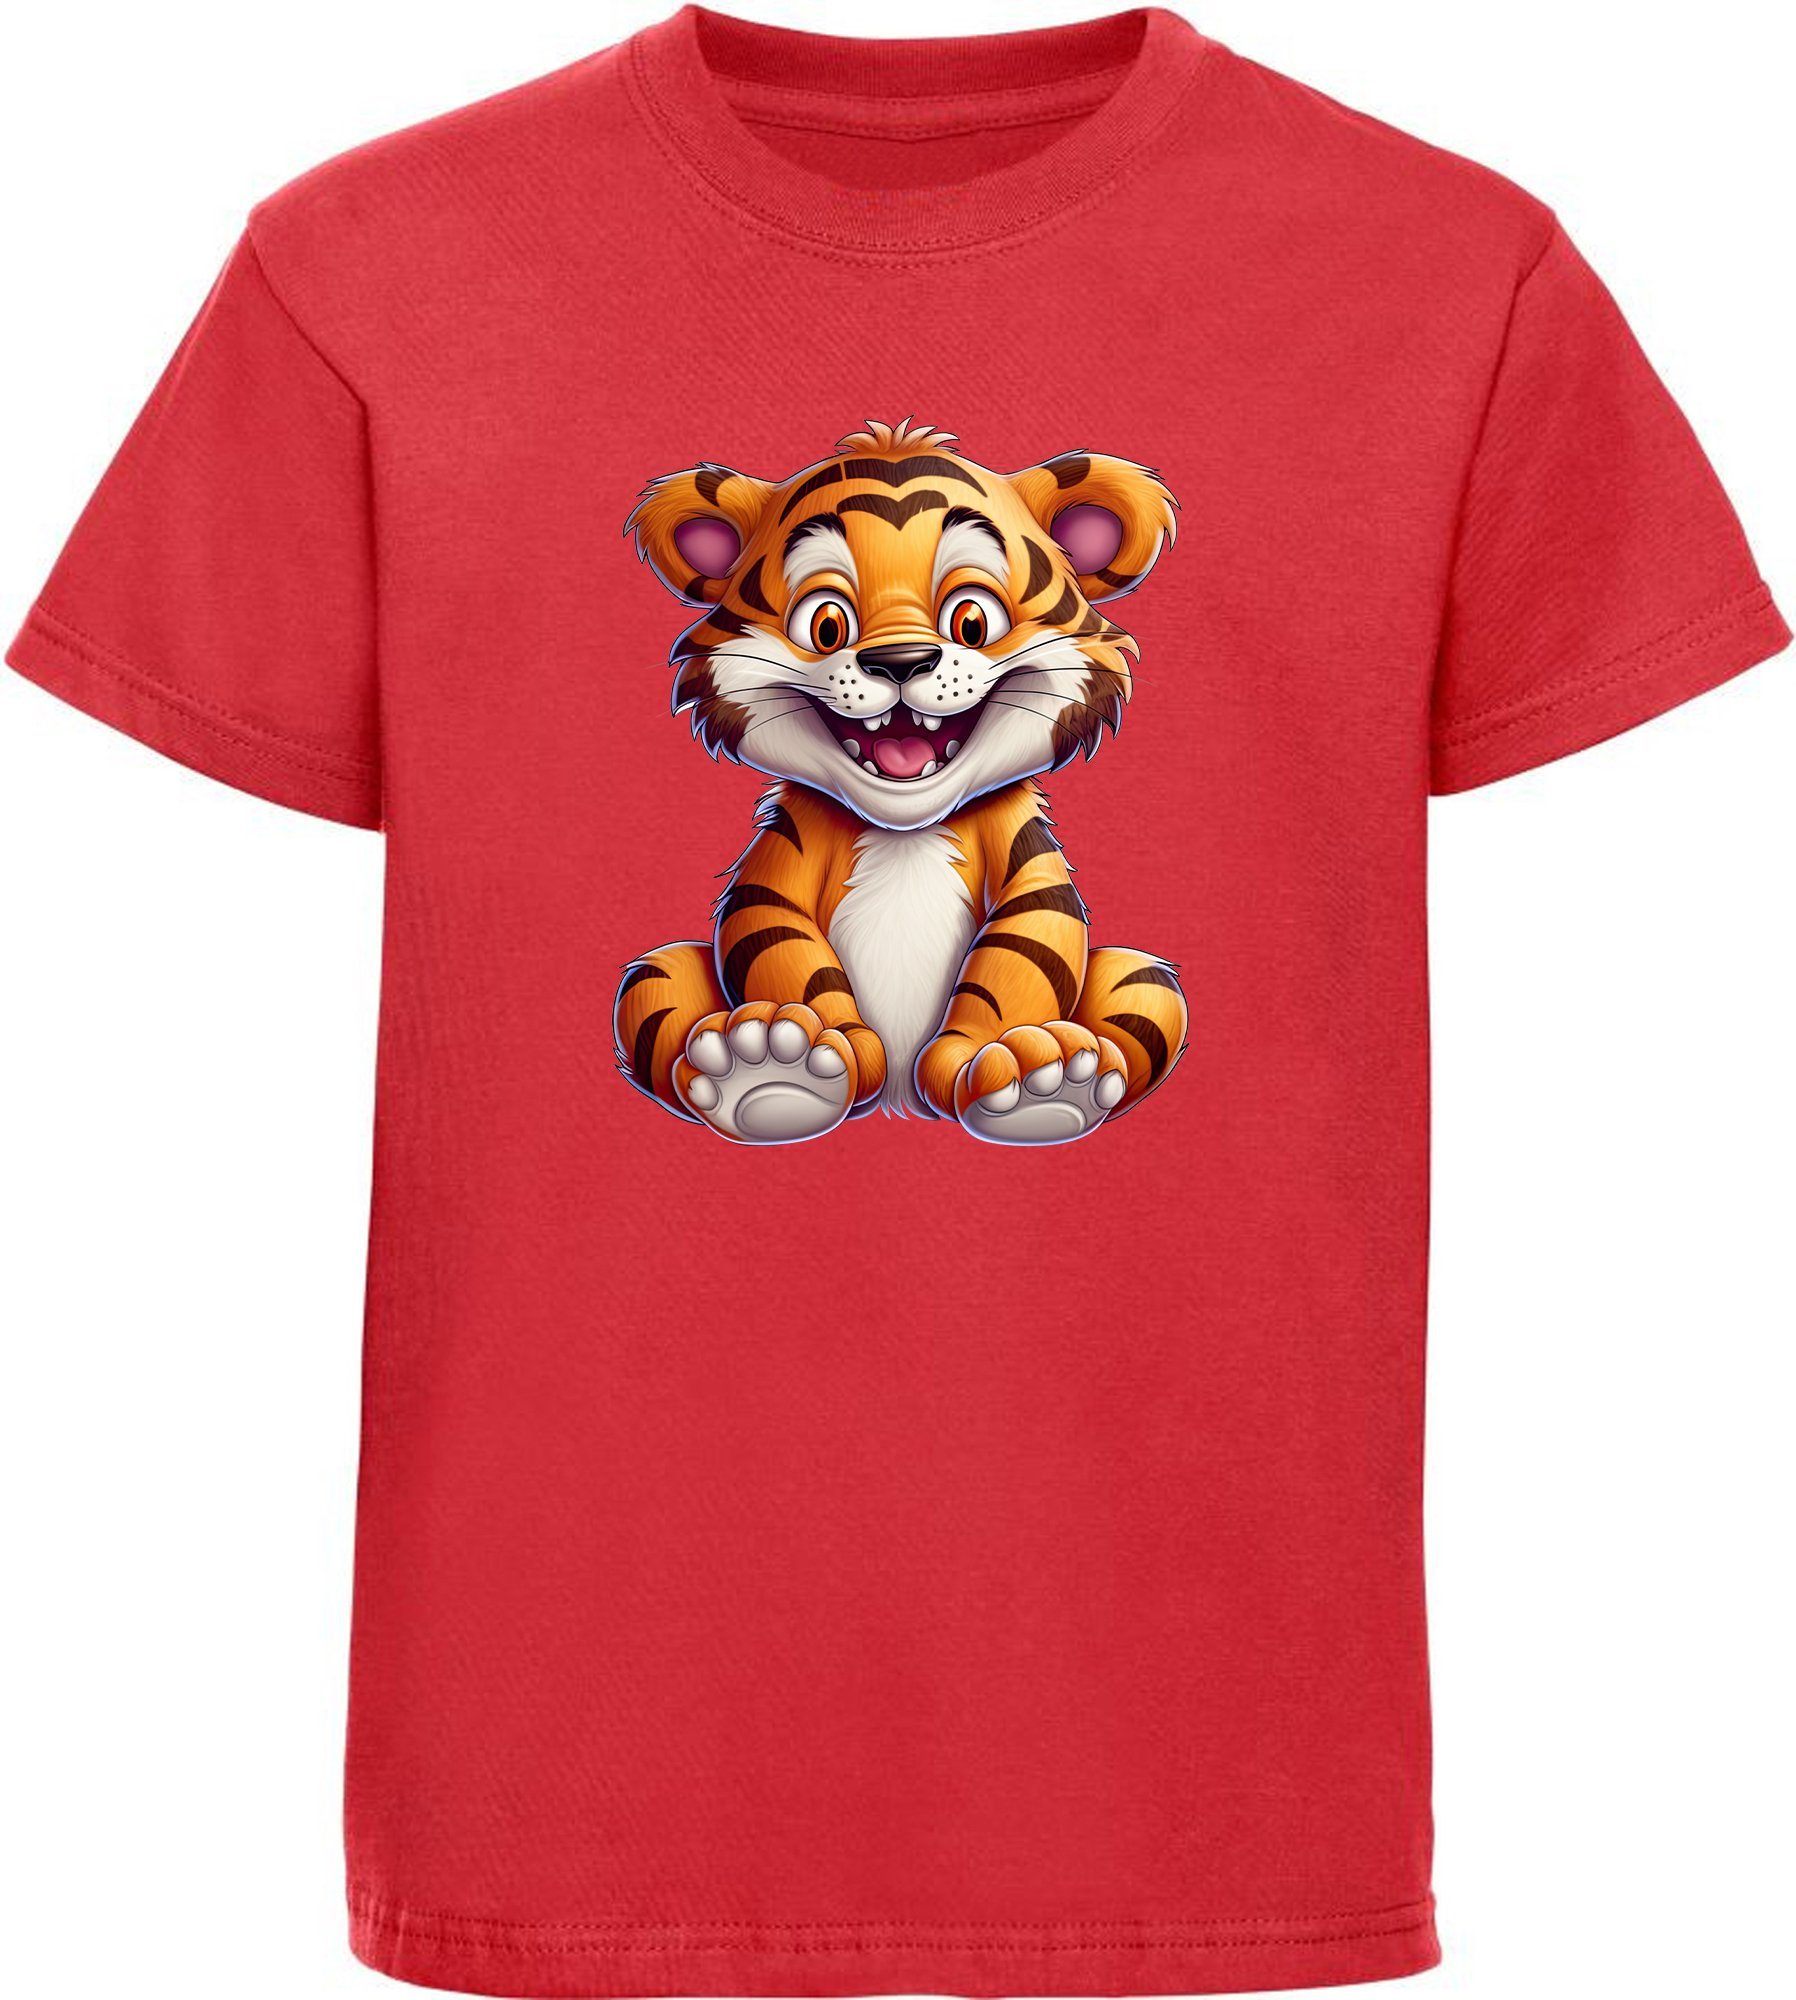 MyDesign24 T-Shirt Kinder Wildtier Baumwollshirt mit bedruckt Aufdruck, Print Tiger Shirt rot Baby i278 